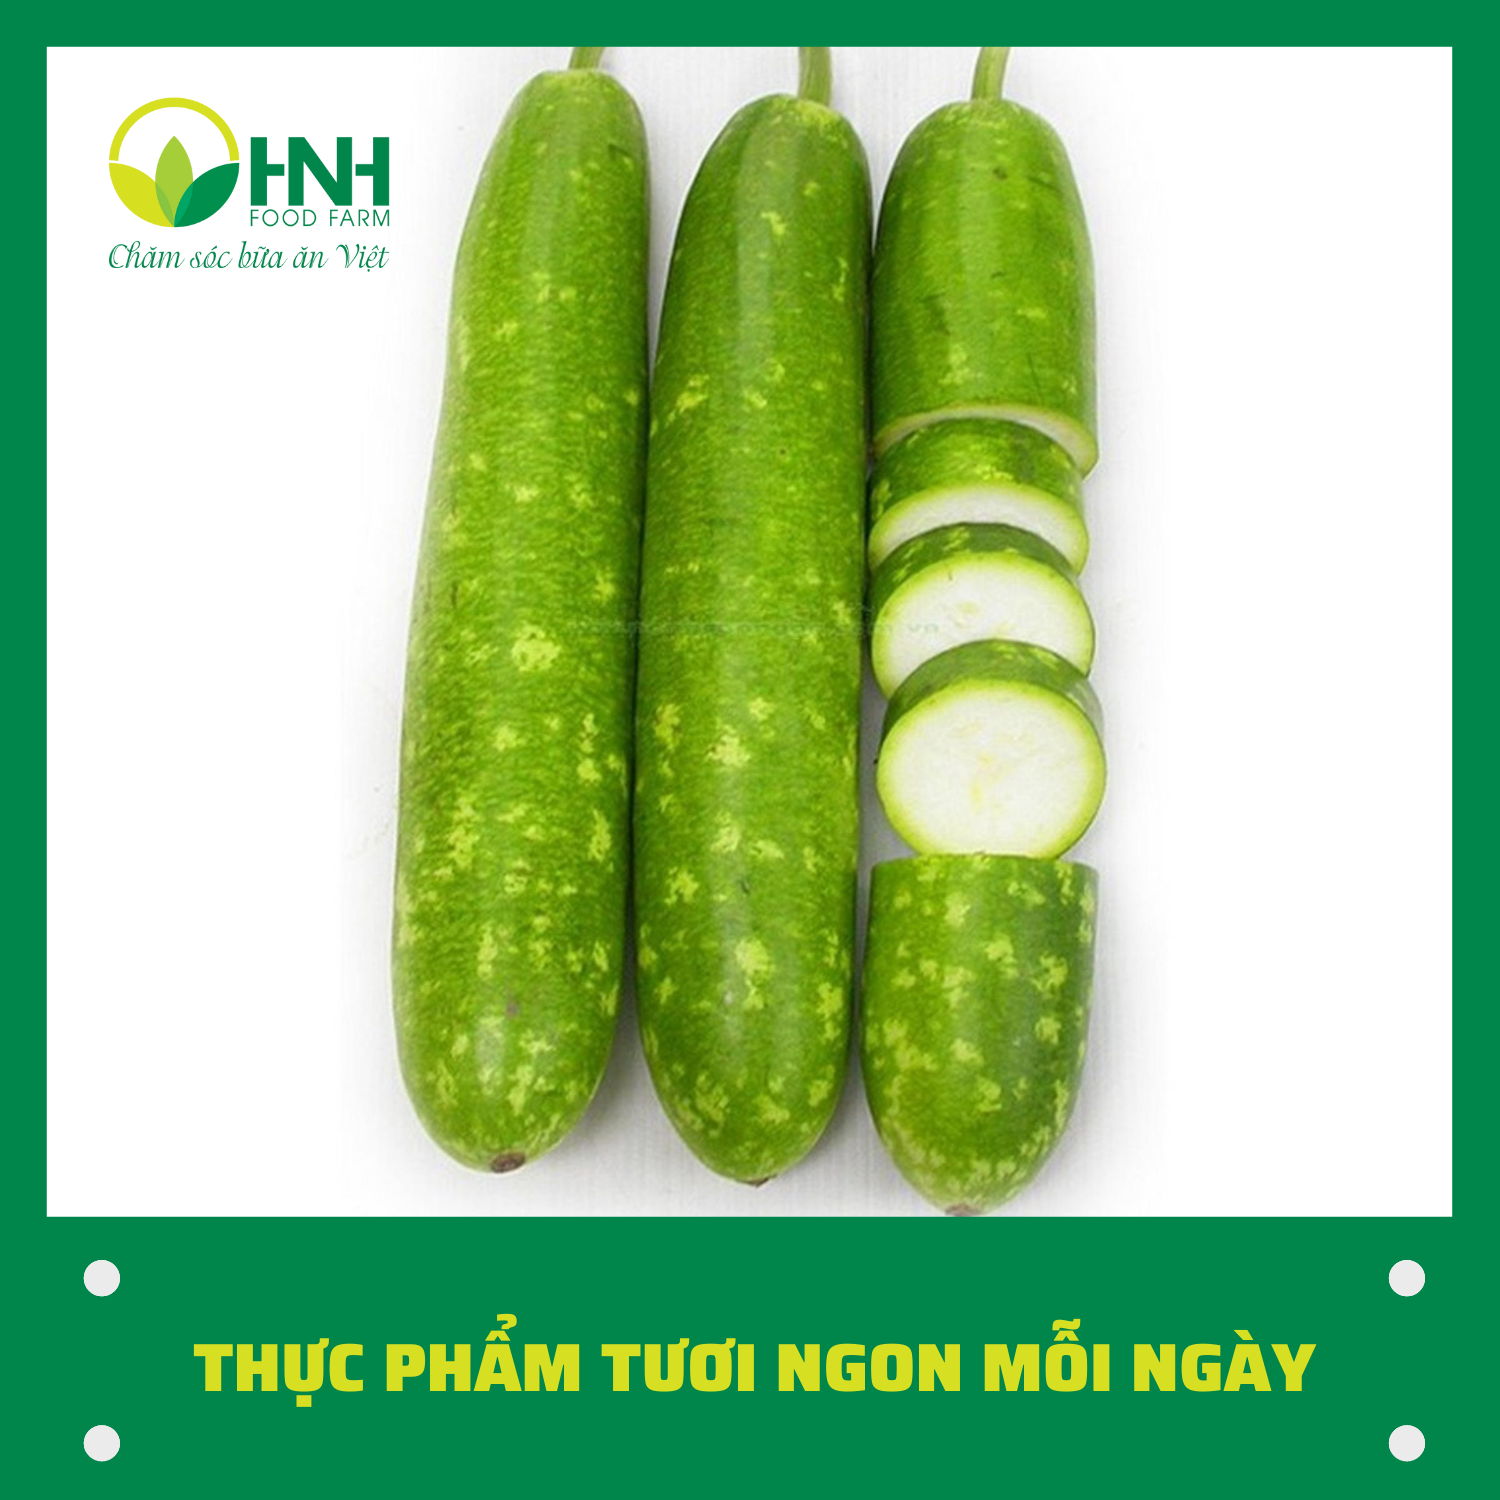 CHỈ GIAO HÀ NỘI Bầu quả sạch ngon trợ giá mùa dịch - HNH Food Farm